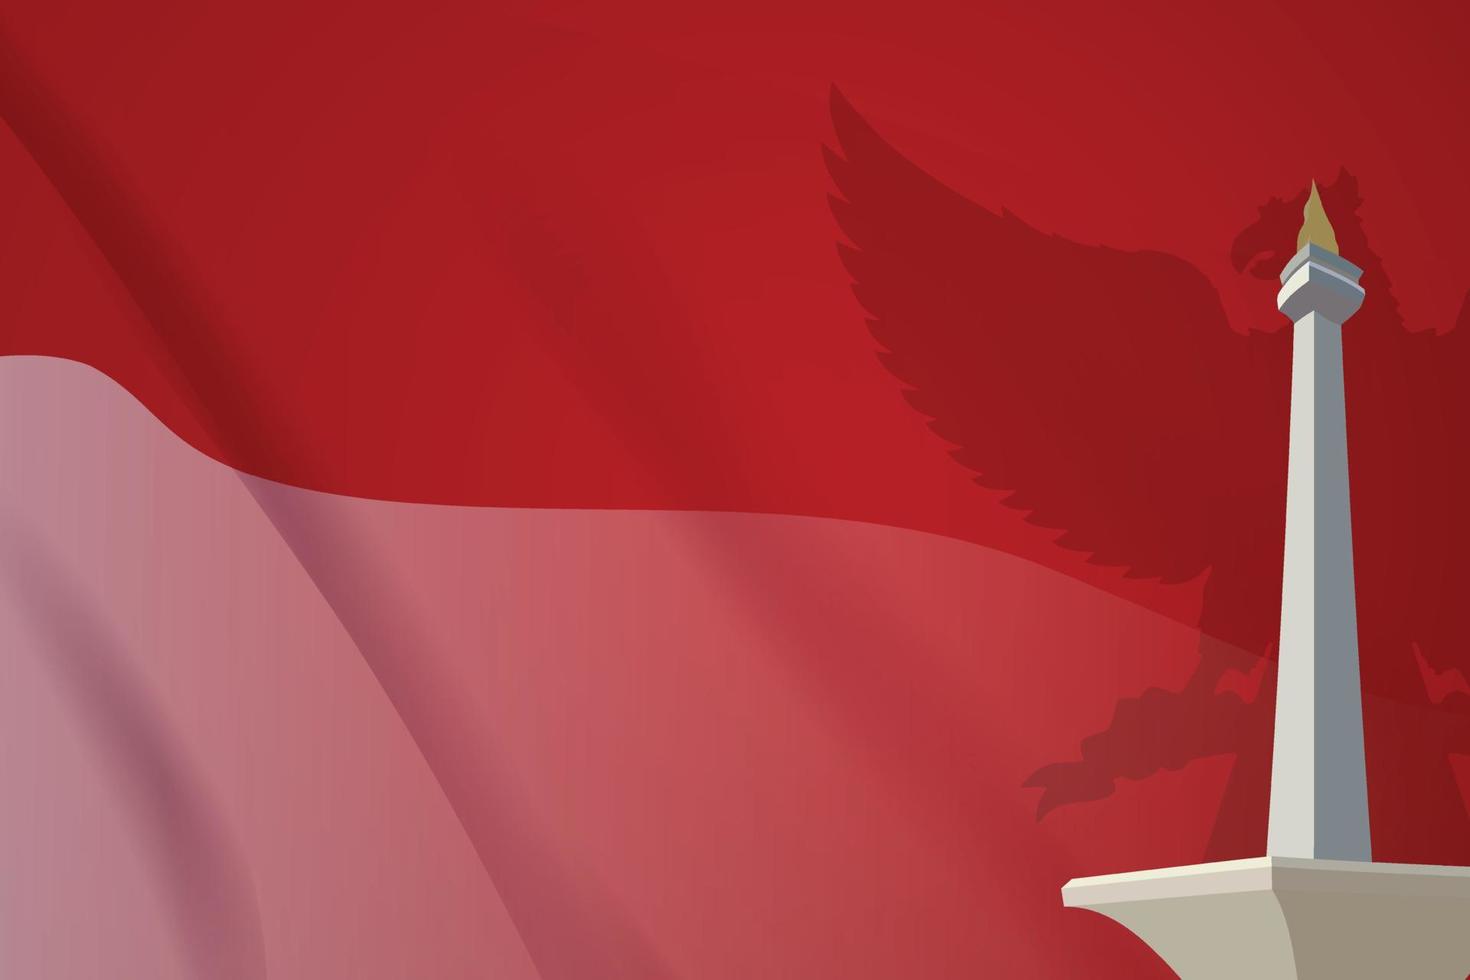 indonesisk röd och vit flagga fladdrande bakgrundsstil med prydnad realistiska Monas landmärke 3d och garuda fågel vektor